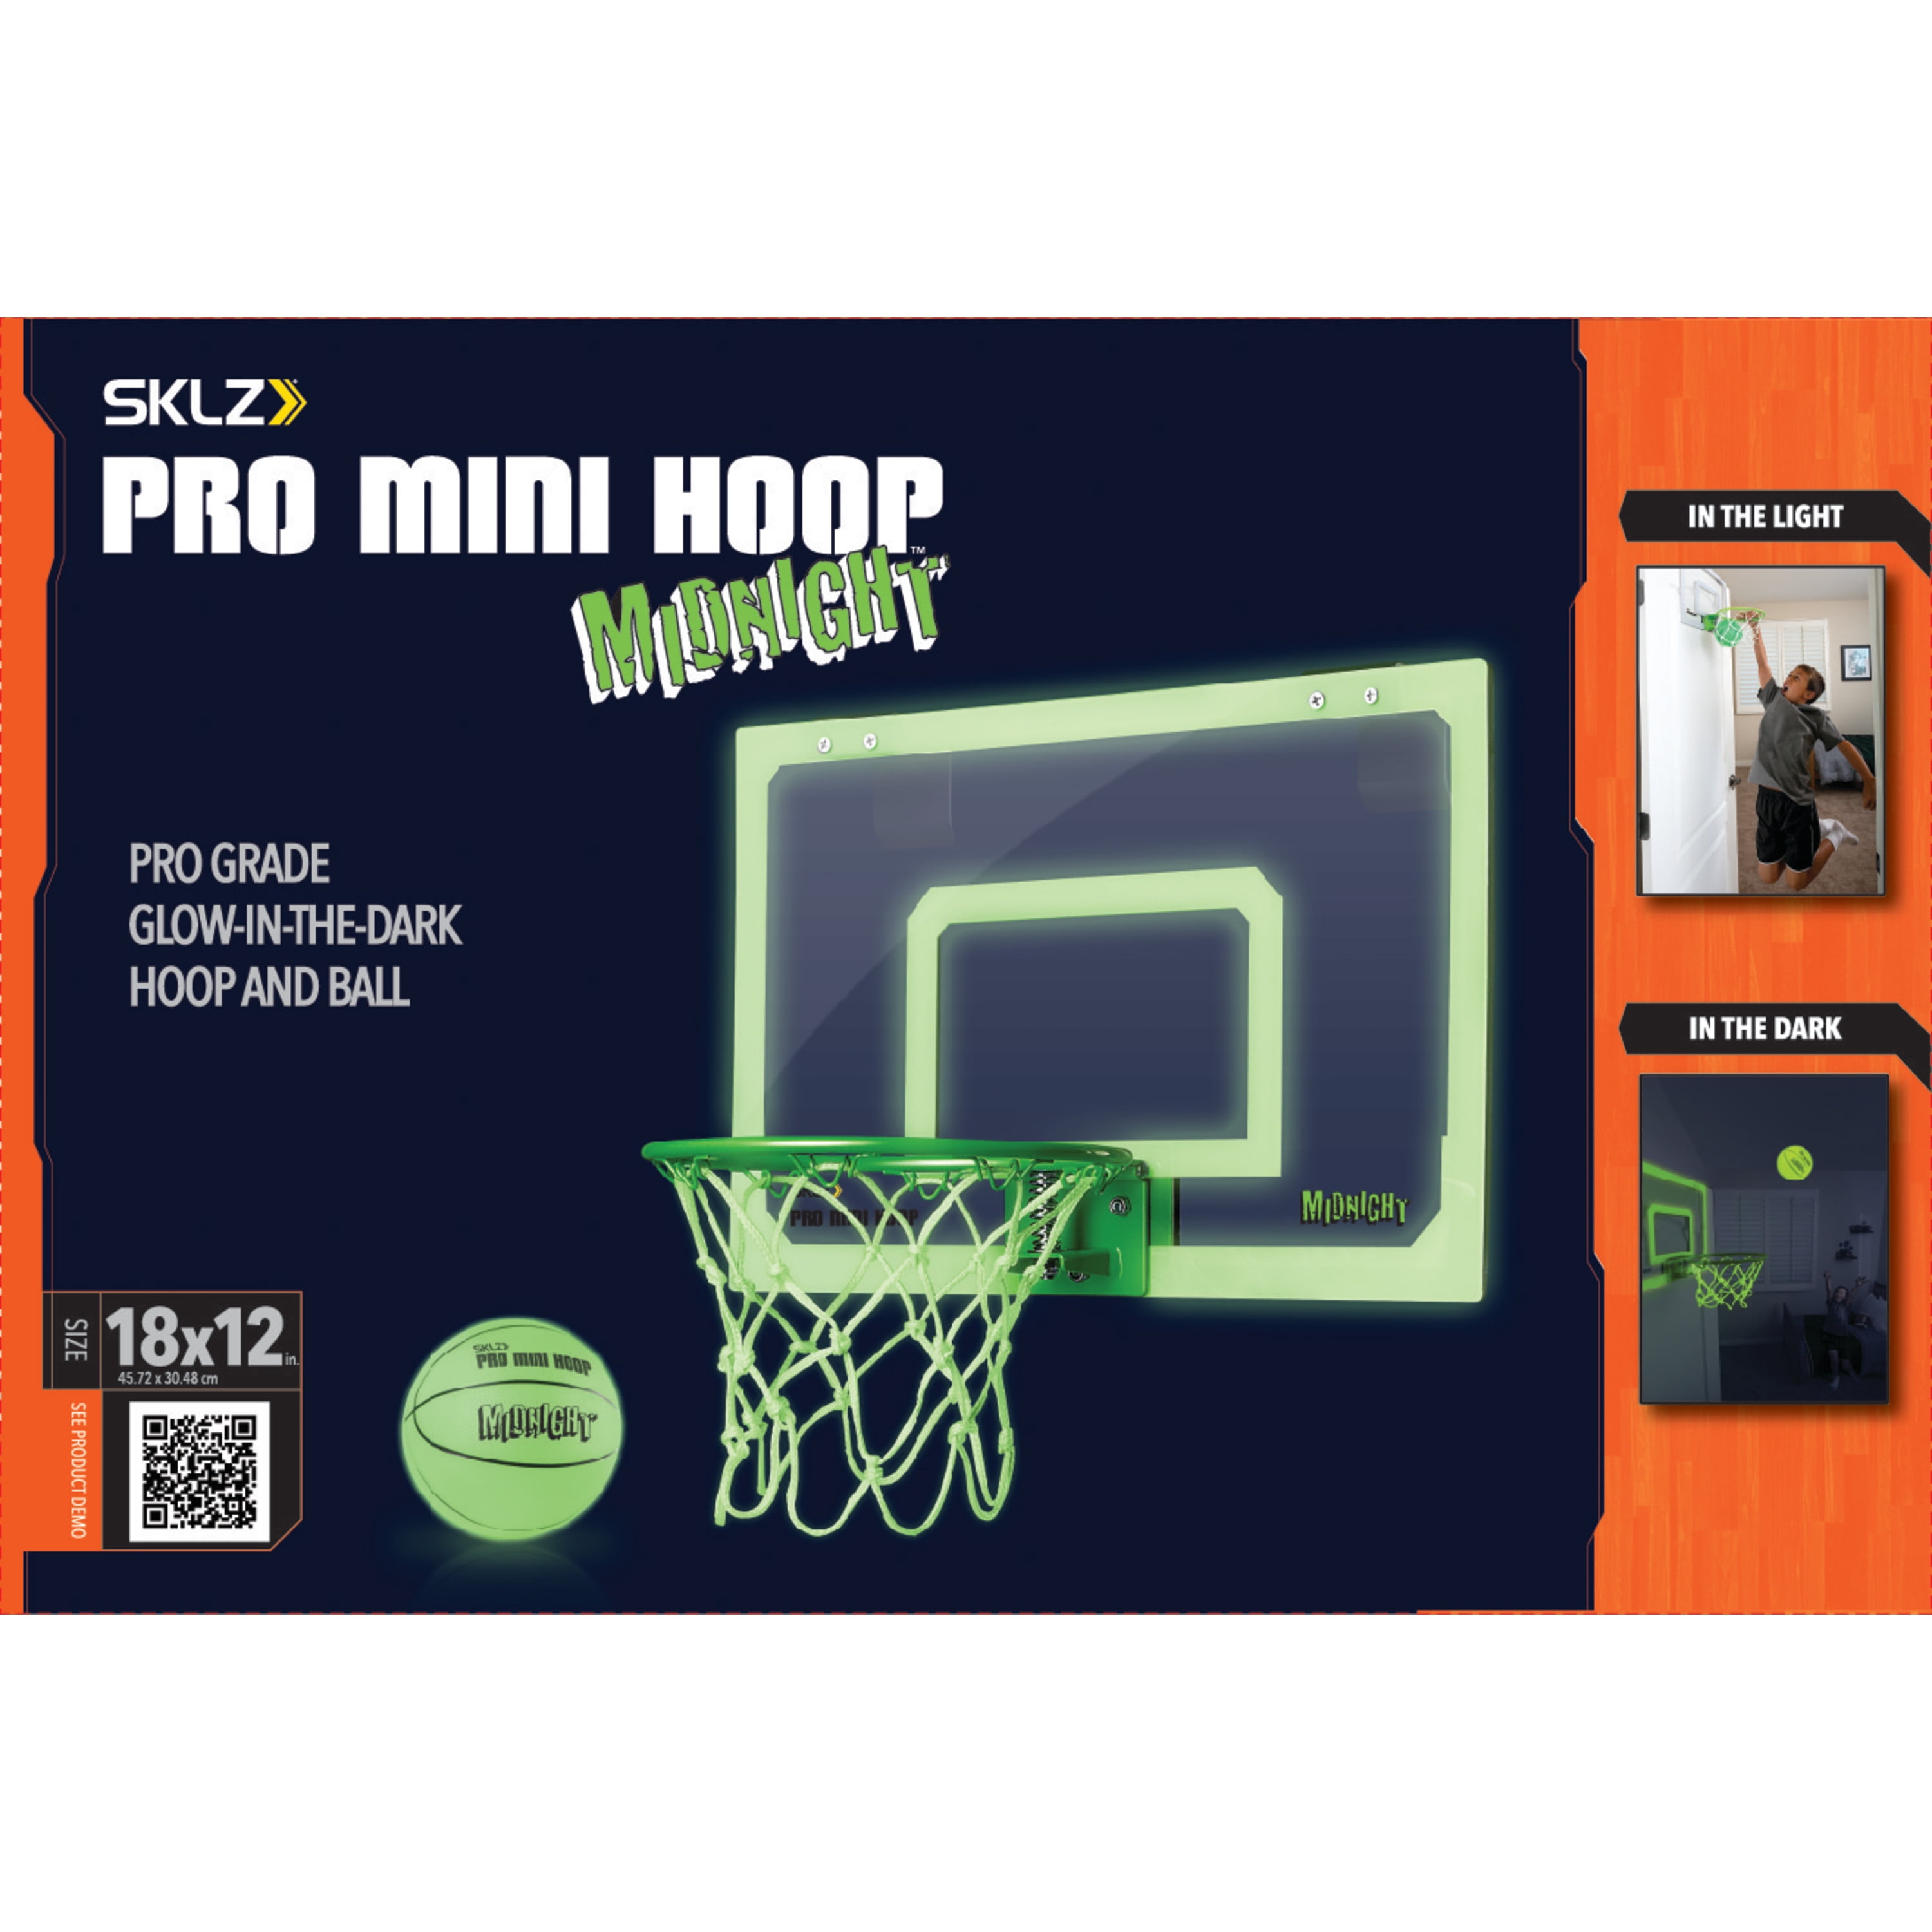 SKLZ Pro Mini Hoop MIDNIGHT 